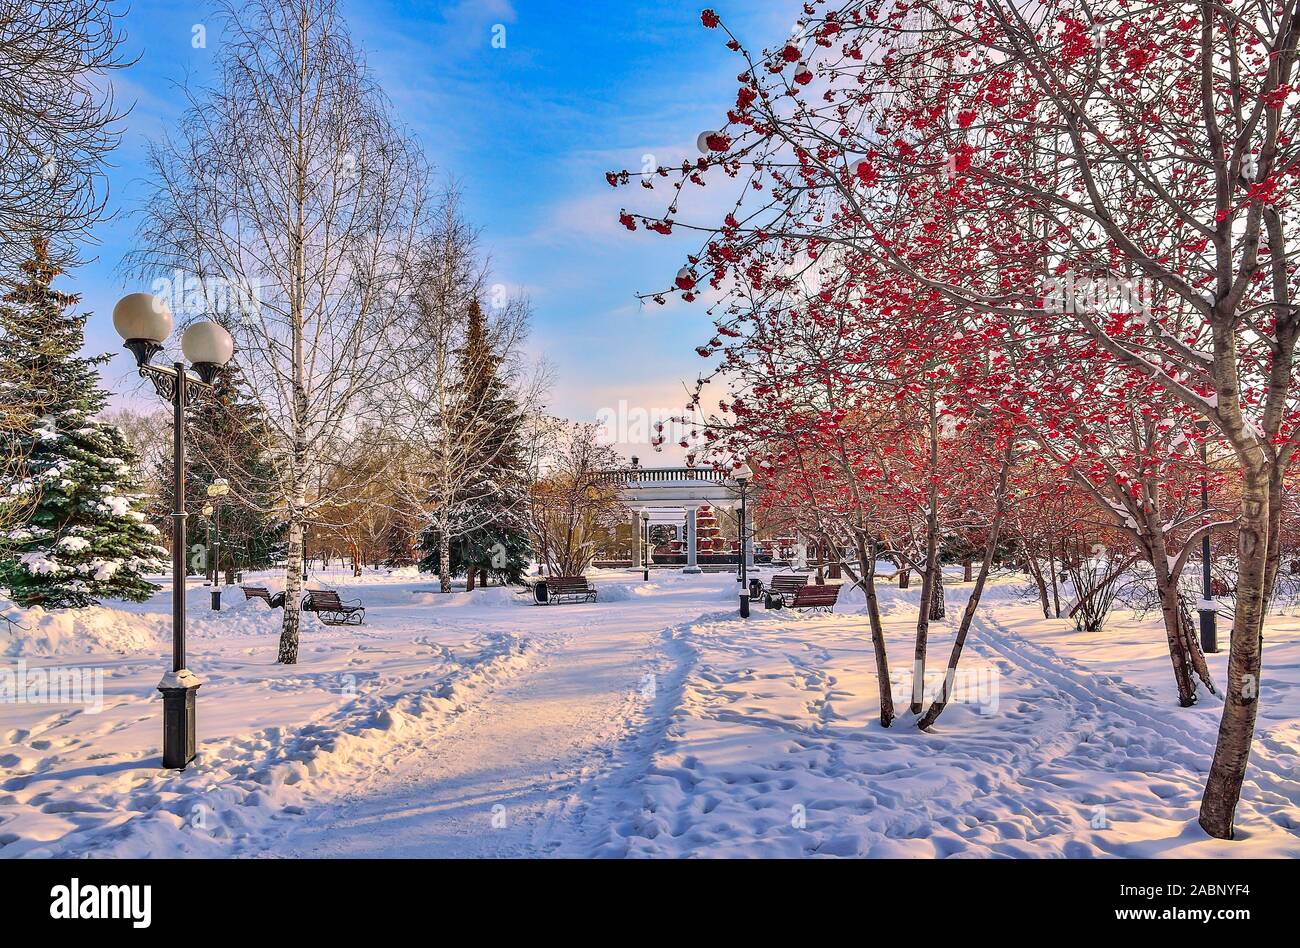 Bunte winter Stadtbild in Abend snowy City Park. Weiß verschneite Gasse mit grünen Tannen und Ebereschen mit leuchtend roten Beeren. Schönheit ein Stockfoto